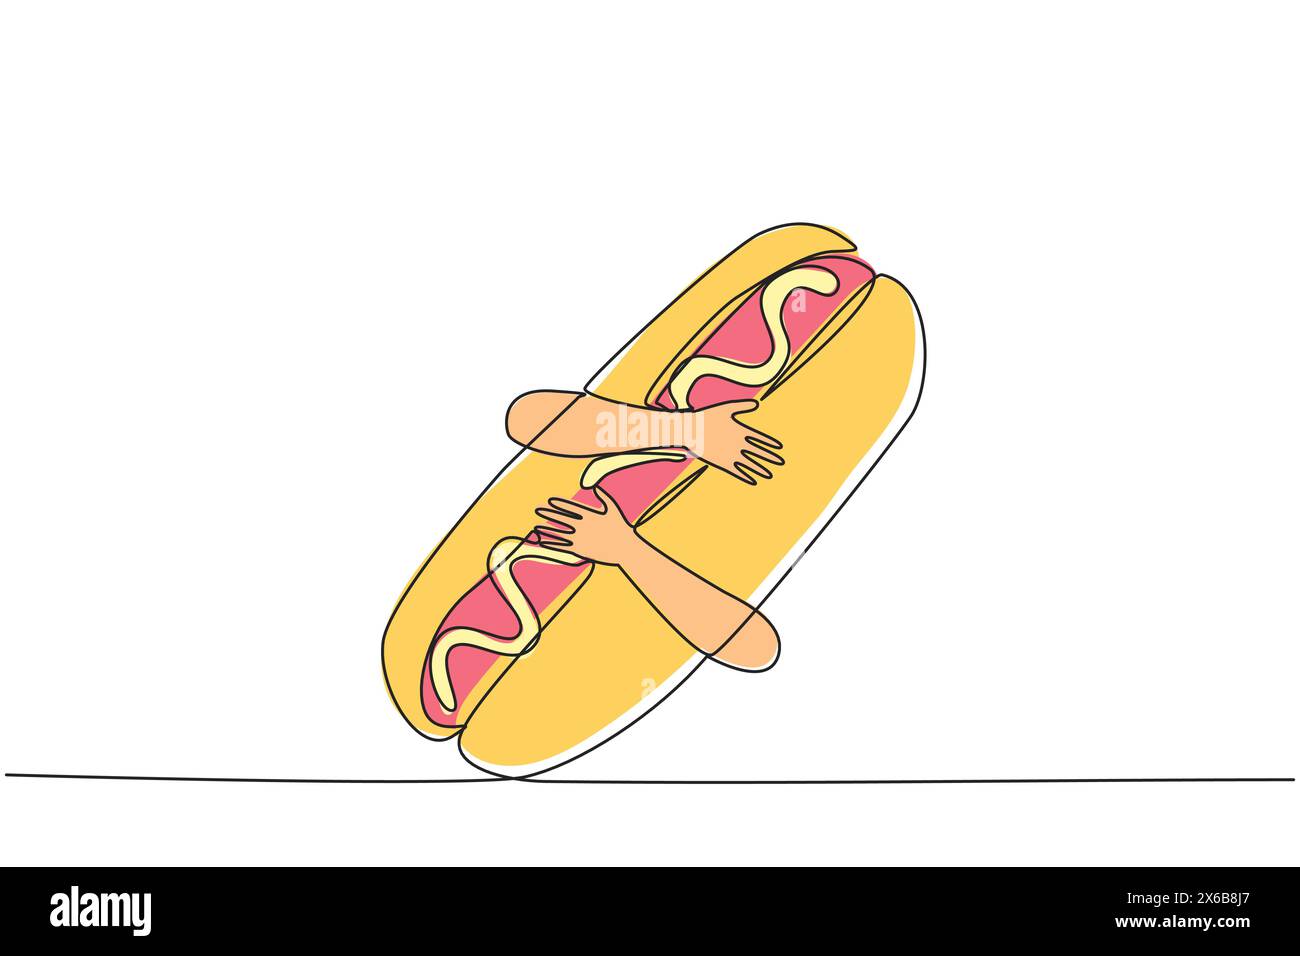 Linea singola continua per disegnare le mani che abbracciano l'hot dog. Le salsicce lunghe cotte vengono servite con panini e poi condite con pezzi di lattuga, pomodoro, oni Illustrazione Vettoriale